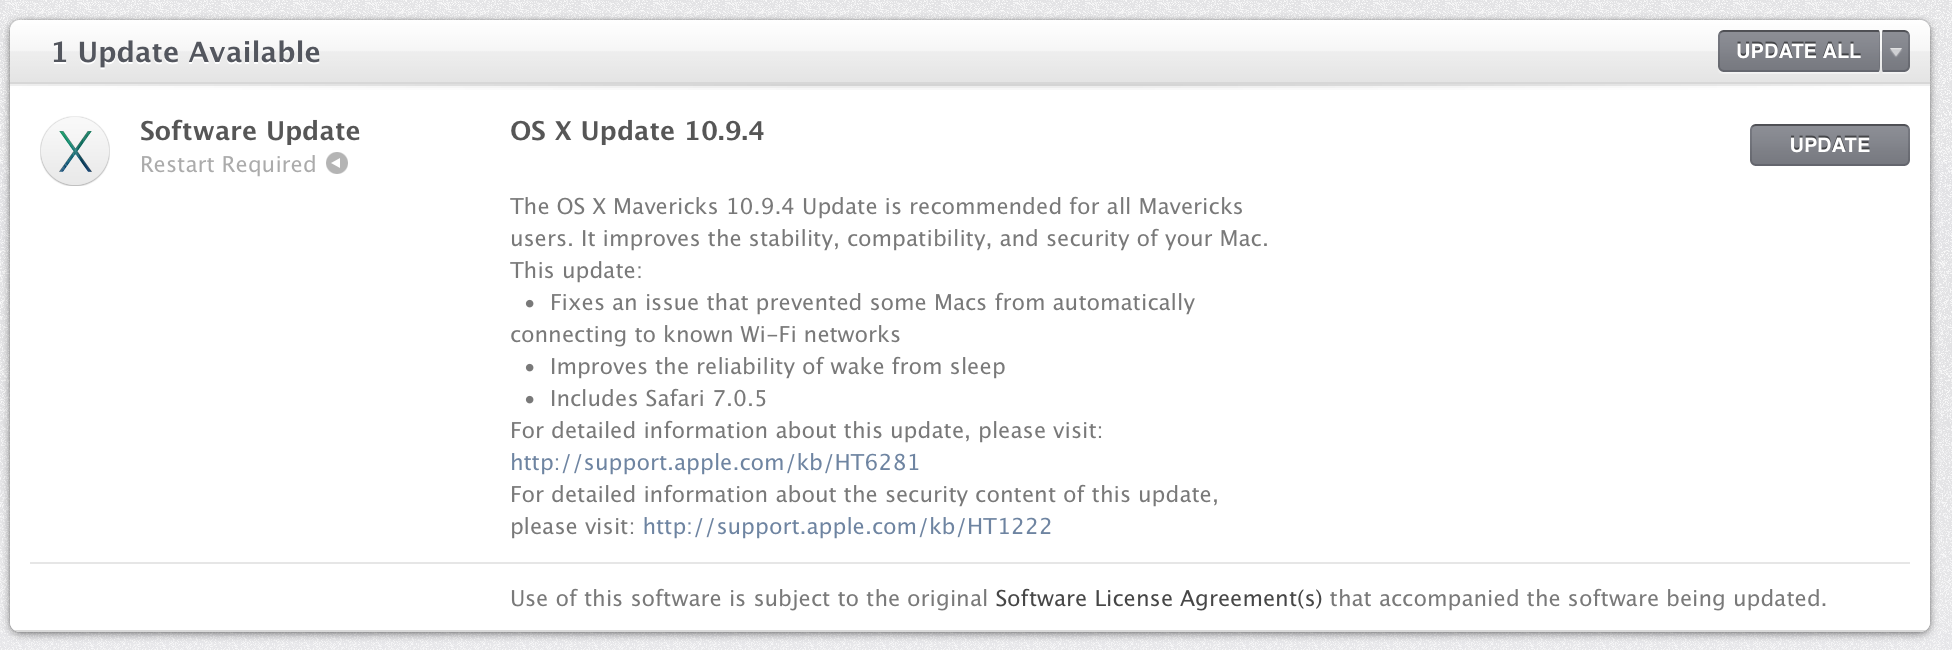 OS X 10.9.4